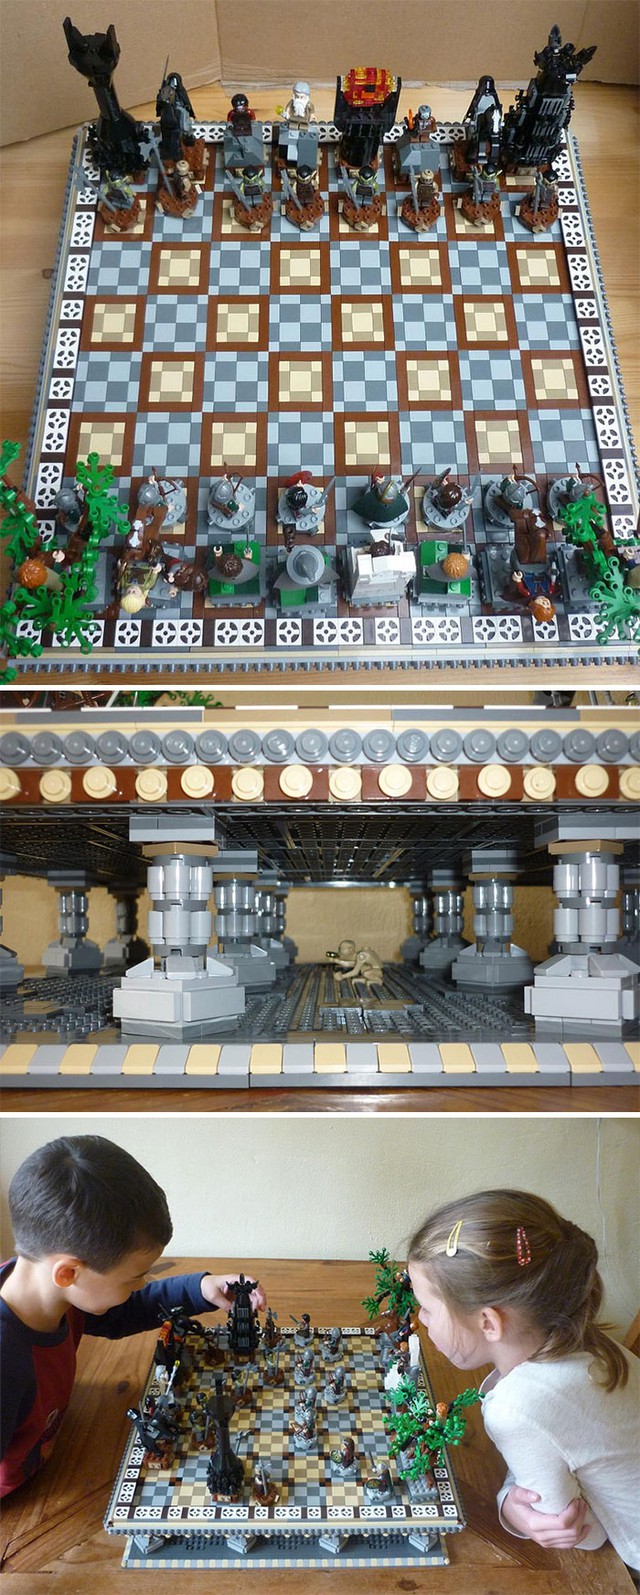 
Bàn cờ vua LEGO theo phong cách Lord Of The Rings, bạn có để ý thấy Gollum đang ngồi hóng ở bên dưới không?
